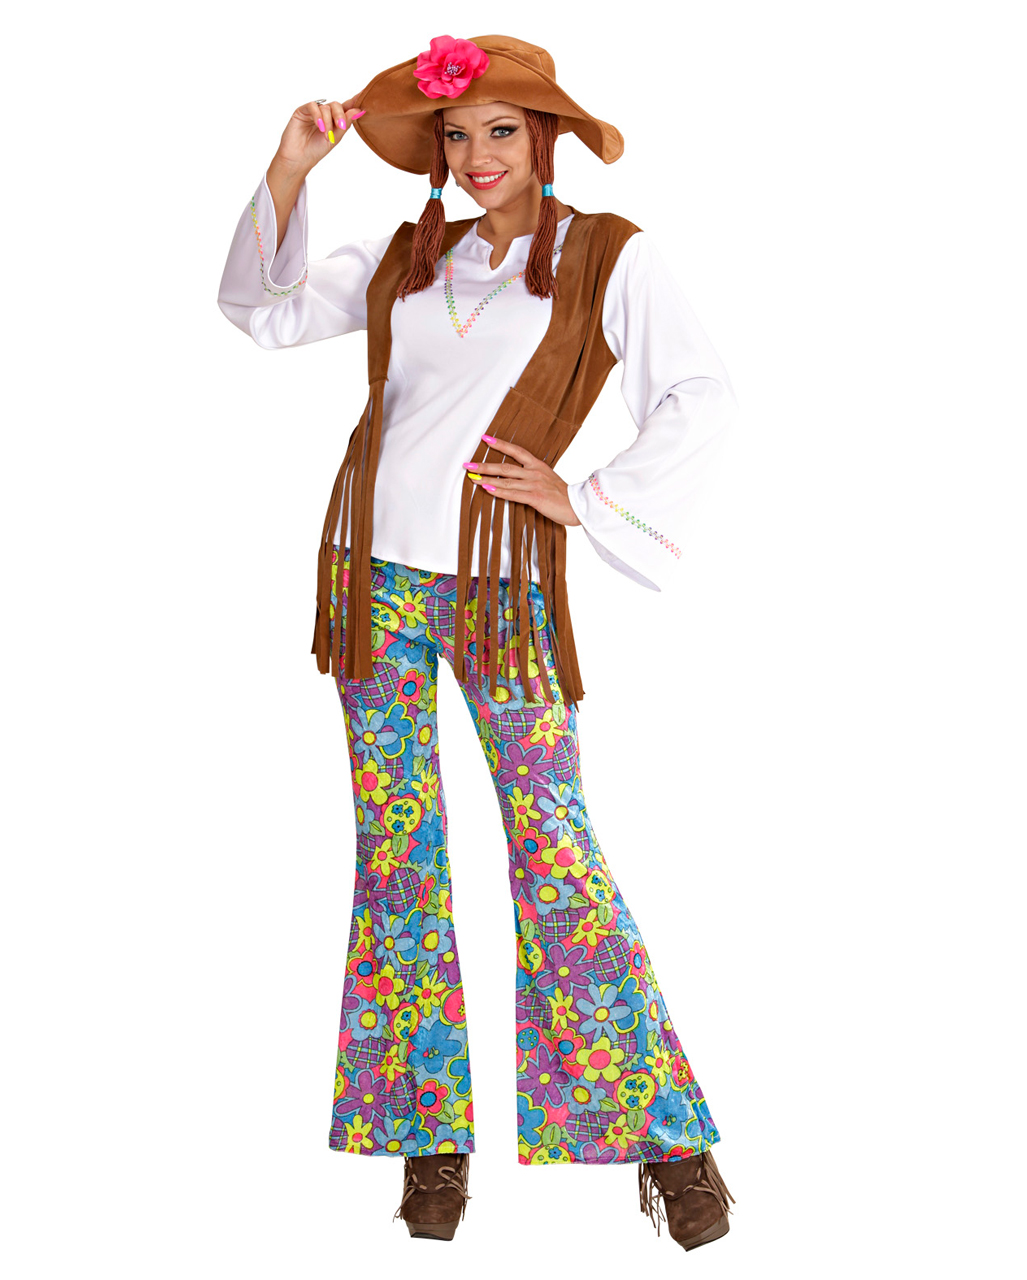 FaschingskostÃ¼me Frauen Schön Hippie Frauen Kostüm Gr Xl Woodstock Kostüm Blumenkinder